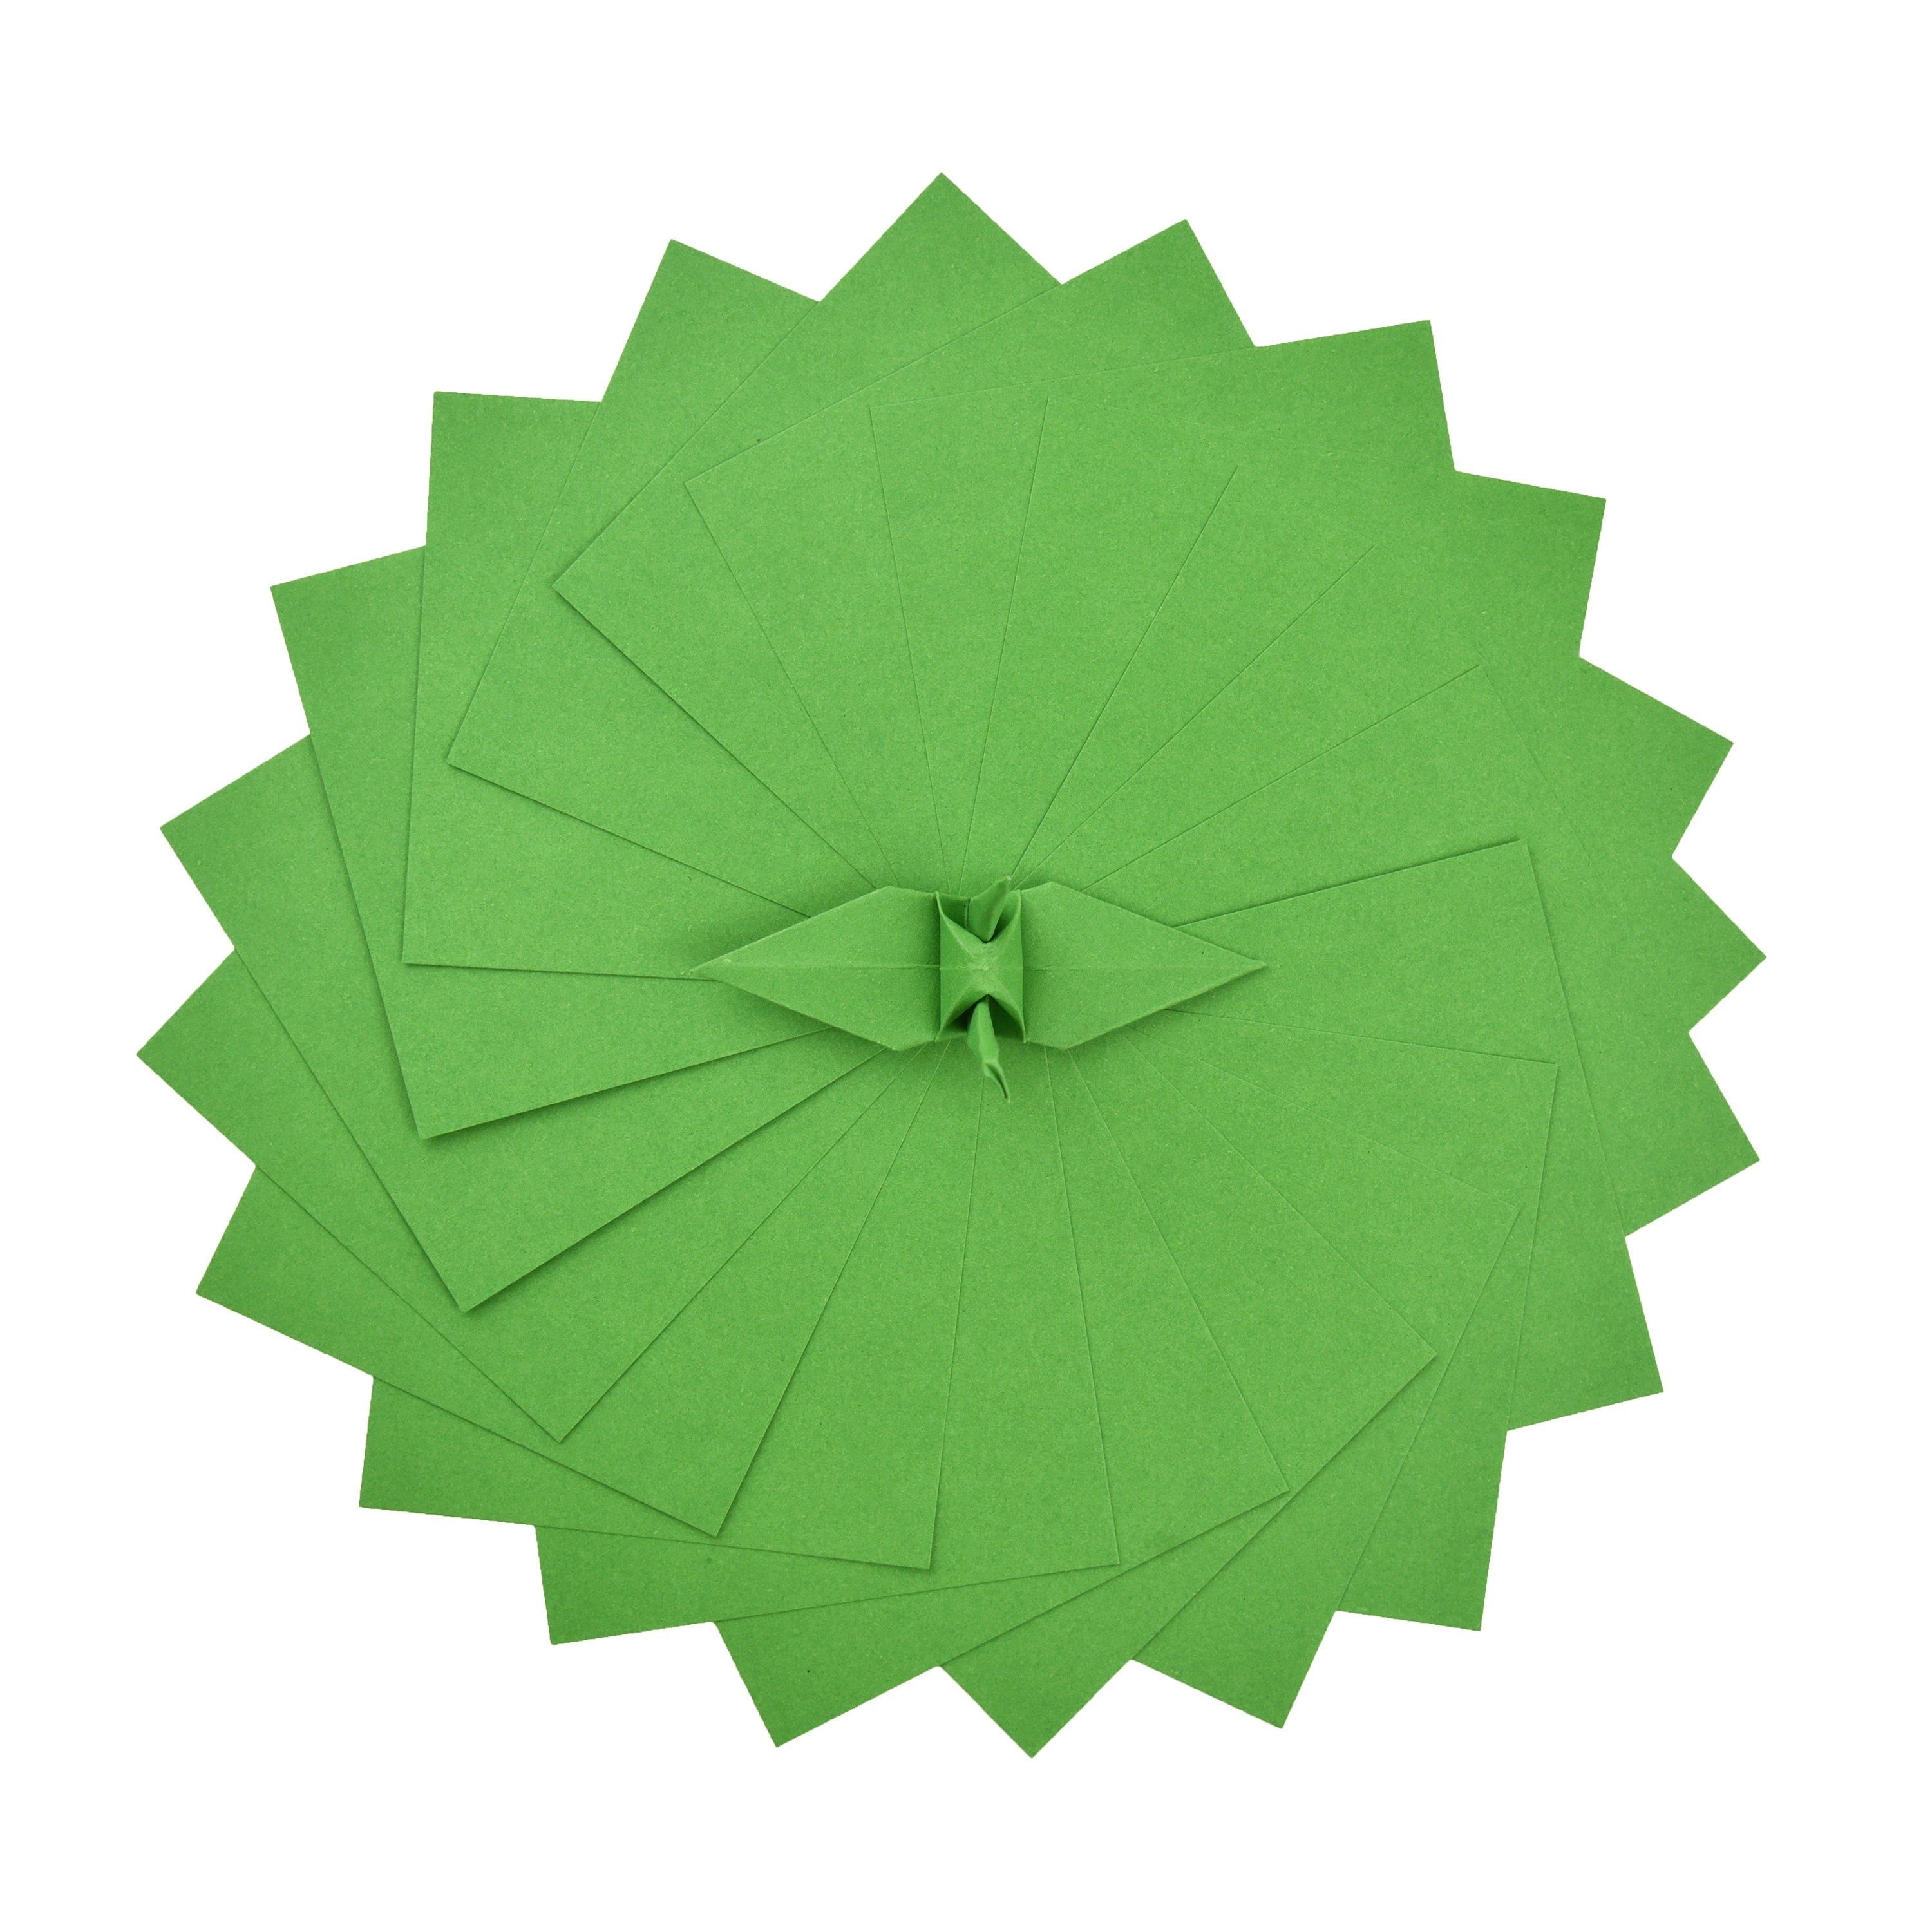 100 Hojas de Papel Origami - 6x6 pulgadas - Paquete de Papel Cuadrado para Plegar, Grullas de Origami y Decoración - S22